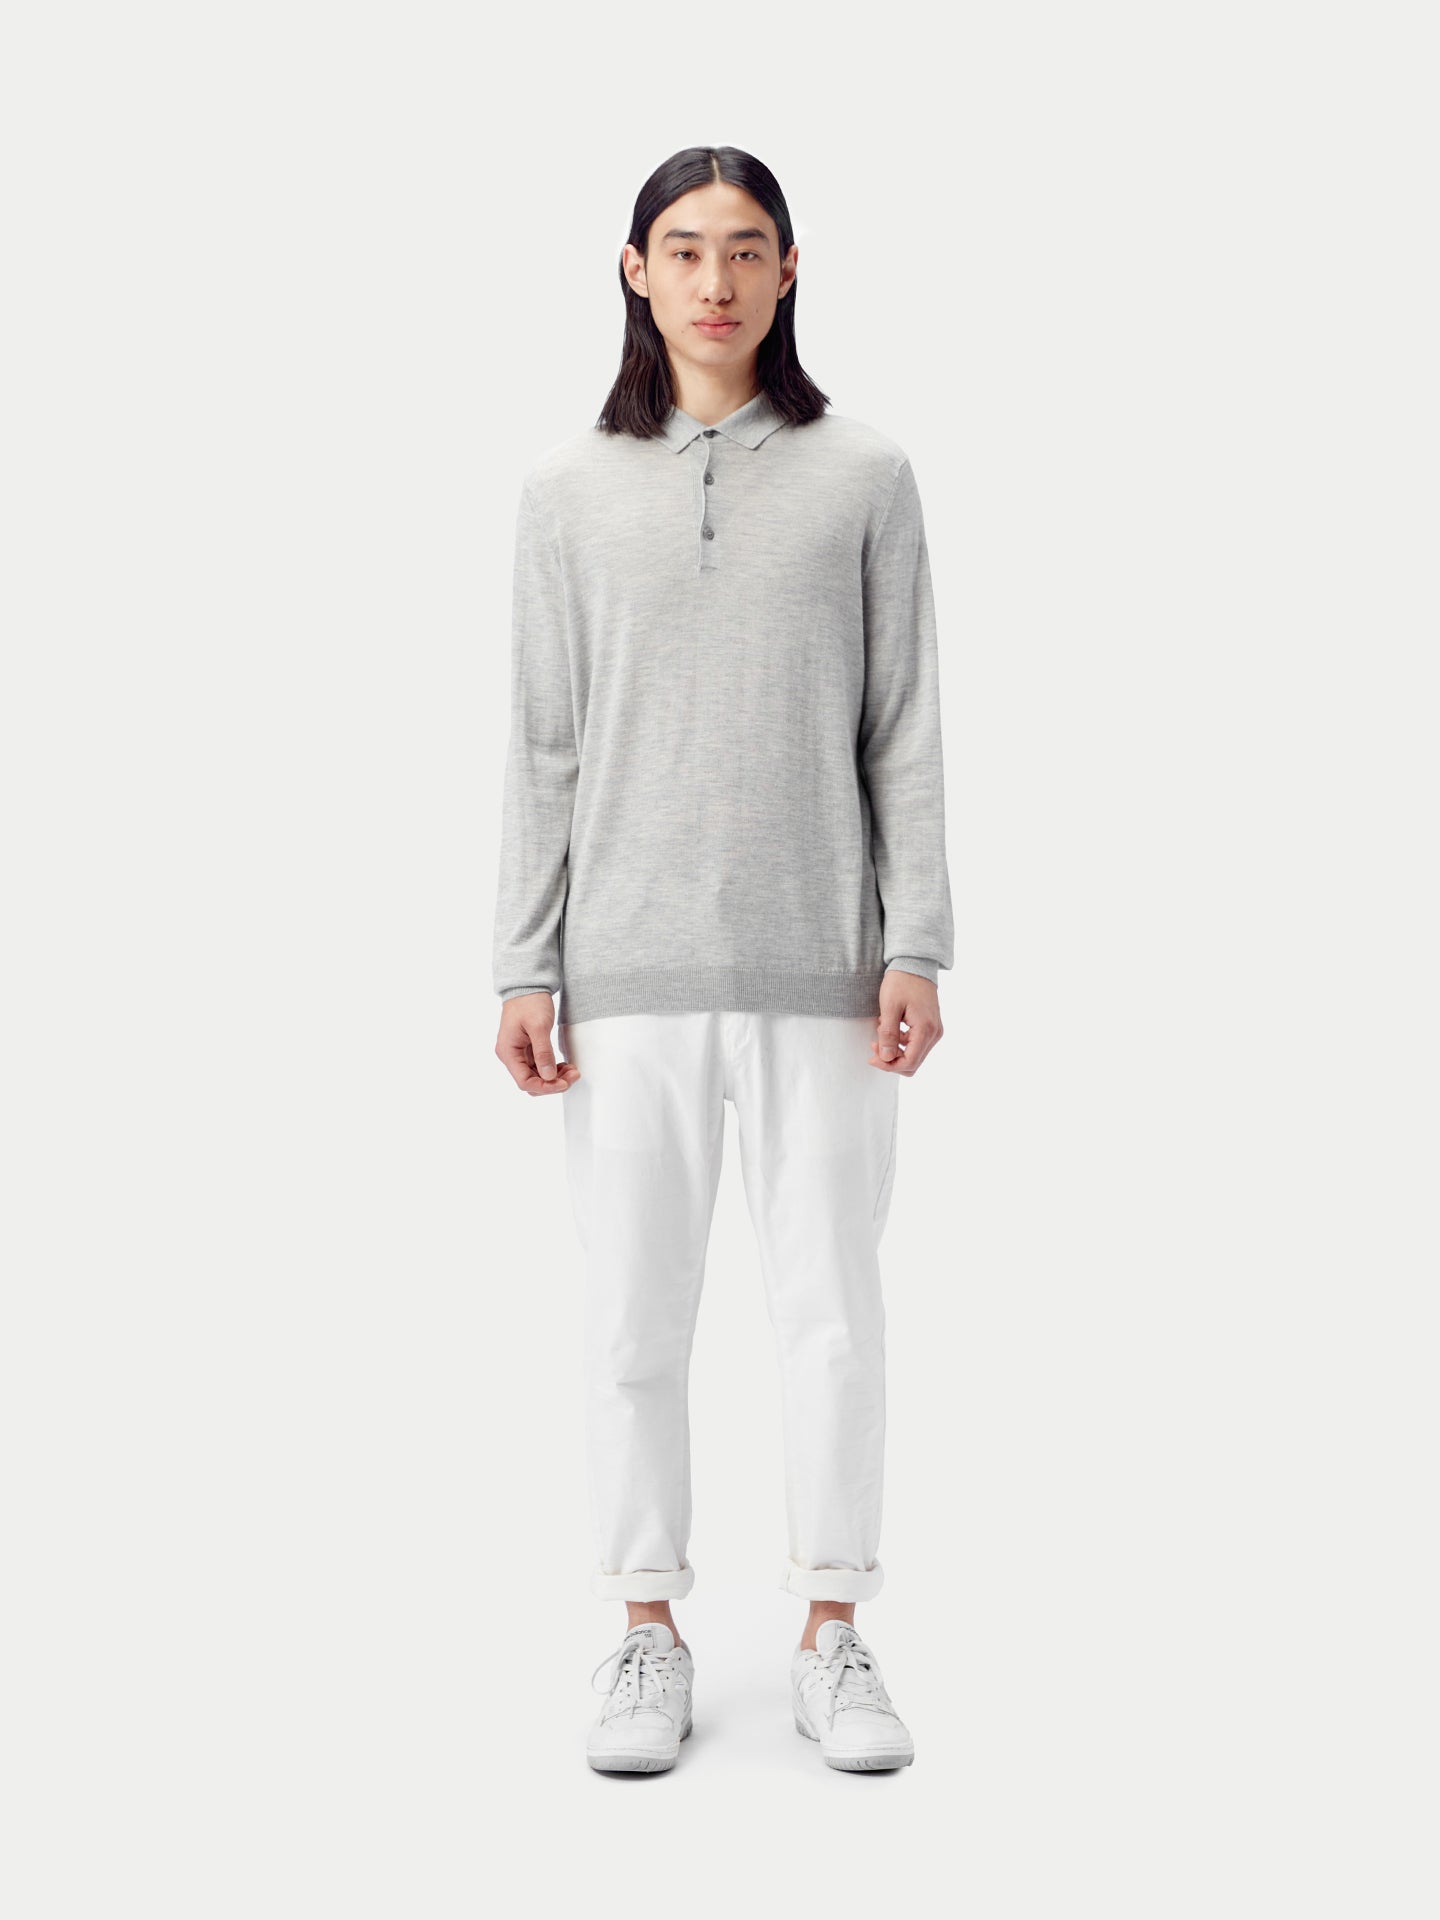 Quality Silk Cashmere Polo Shirt for Men | GOBI Cashmere